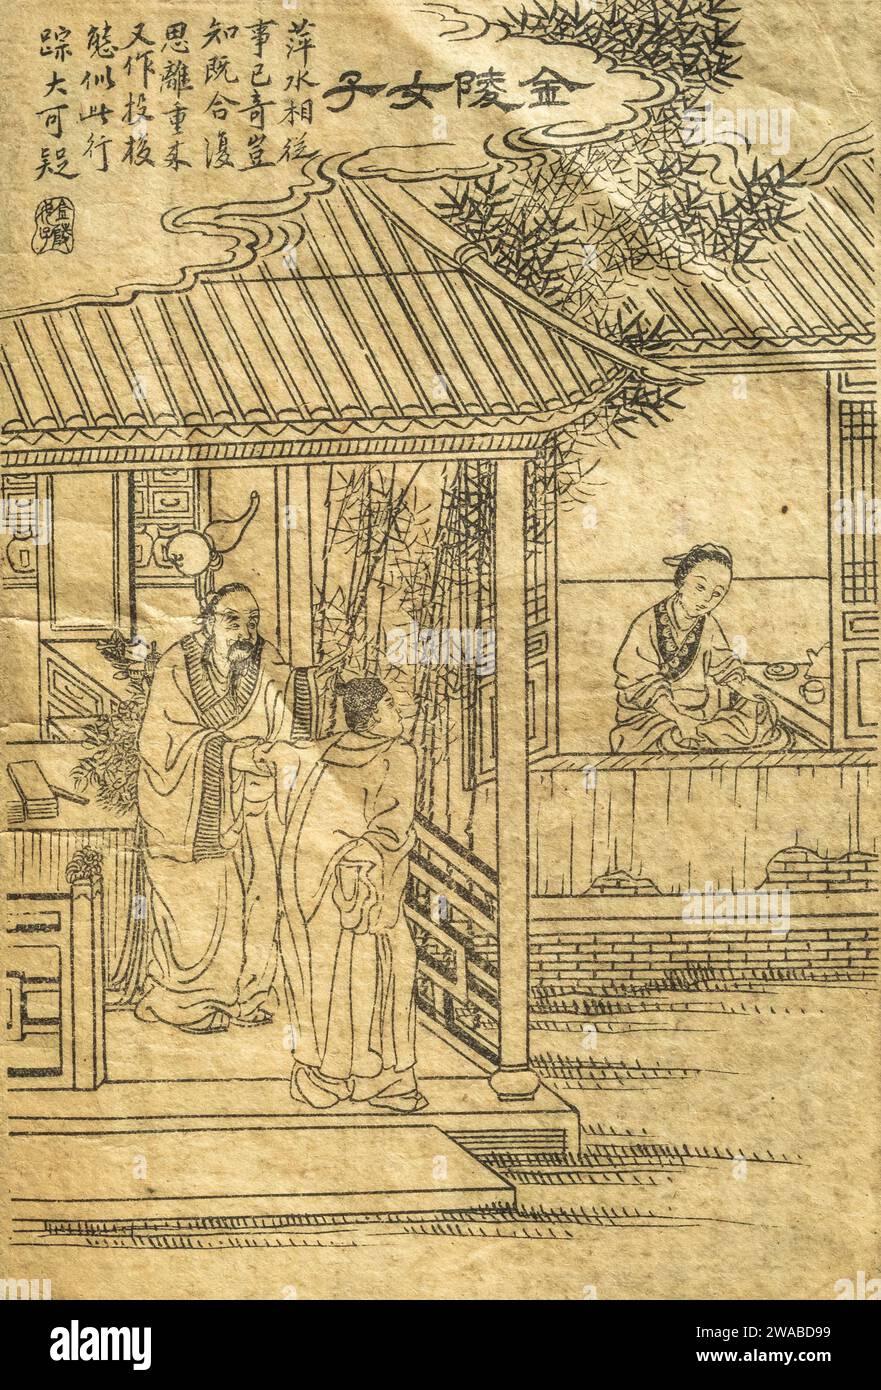 Une illustration d'une scène de l'histoire courte 'Jinling Woman' recueillie dans Strange Tales from a Chinese Studio (Liaozhai Zhiyi) par pu Songling. Banque D'Images